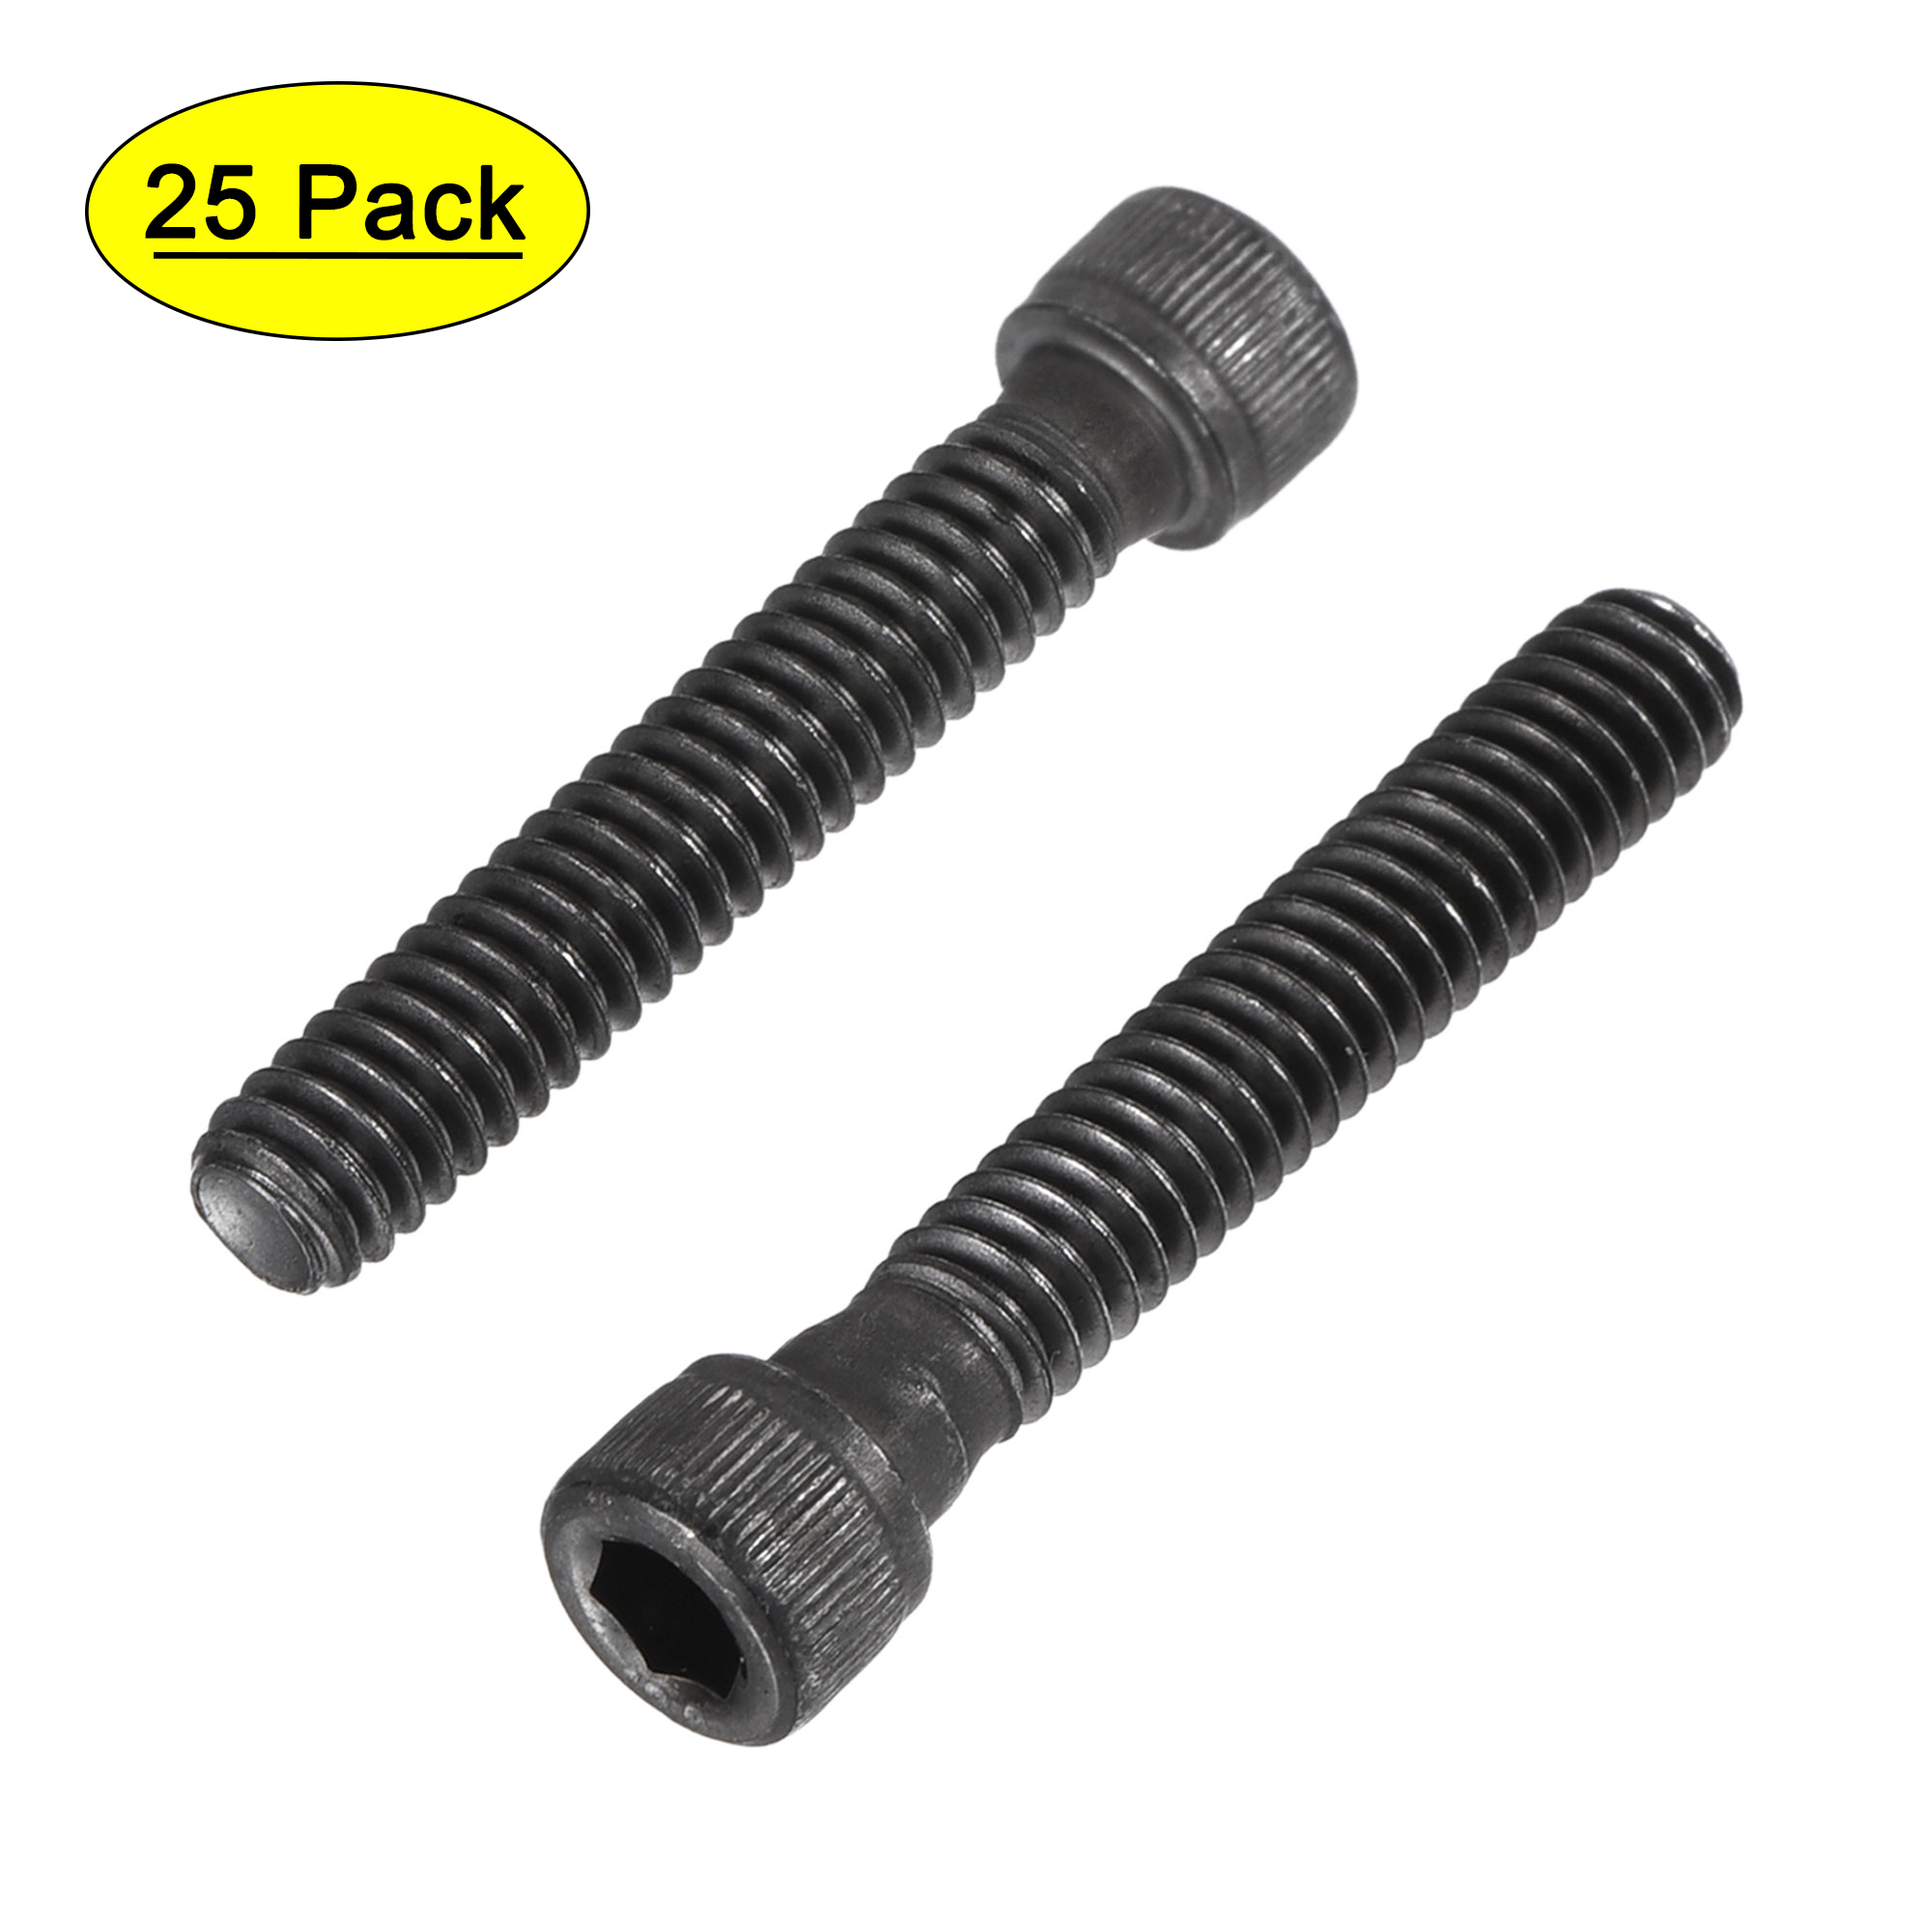 1/4-20x1-1/2" Hex Socket Bolts 12.9 Grade Alloy Steel Black Oxide 25 Pack - image 1 of 5